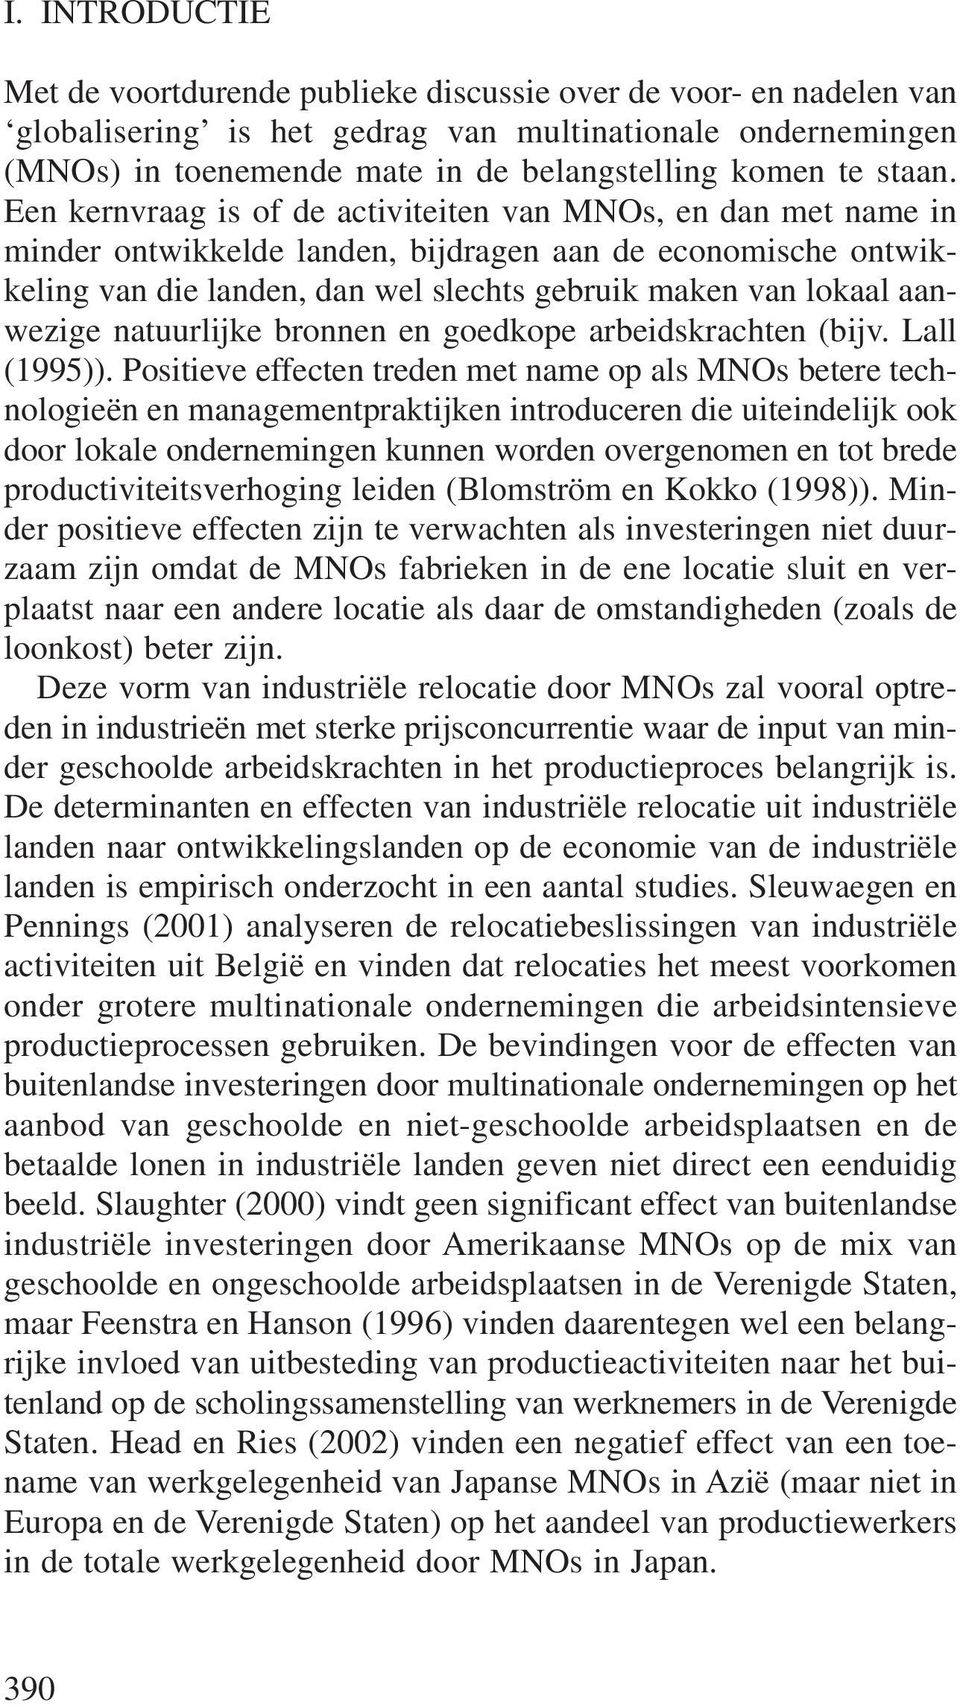 Een kernvraag is of de activiteiten van MNOs, en dan met name in minder ontwikkelde landen, bijdragen aan de economische ontwikkeling van die landen, dan wel slechts gebruik maken van lokaal